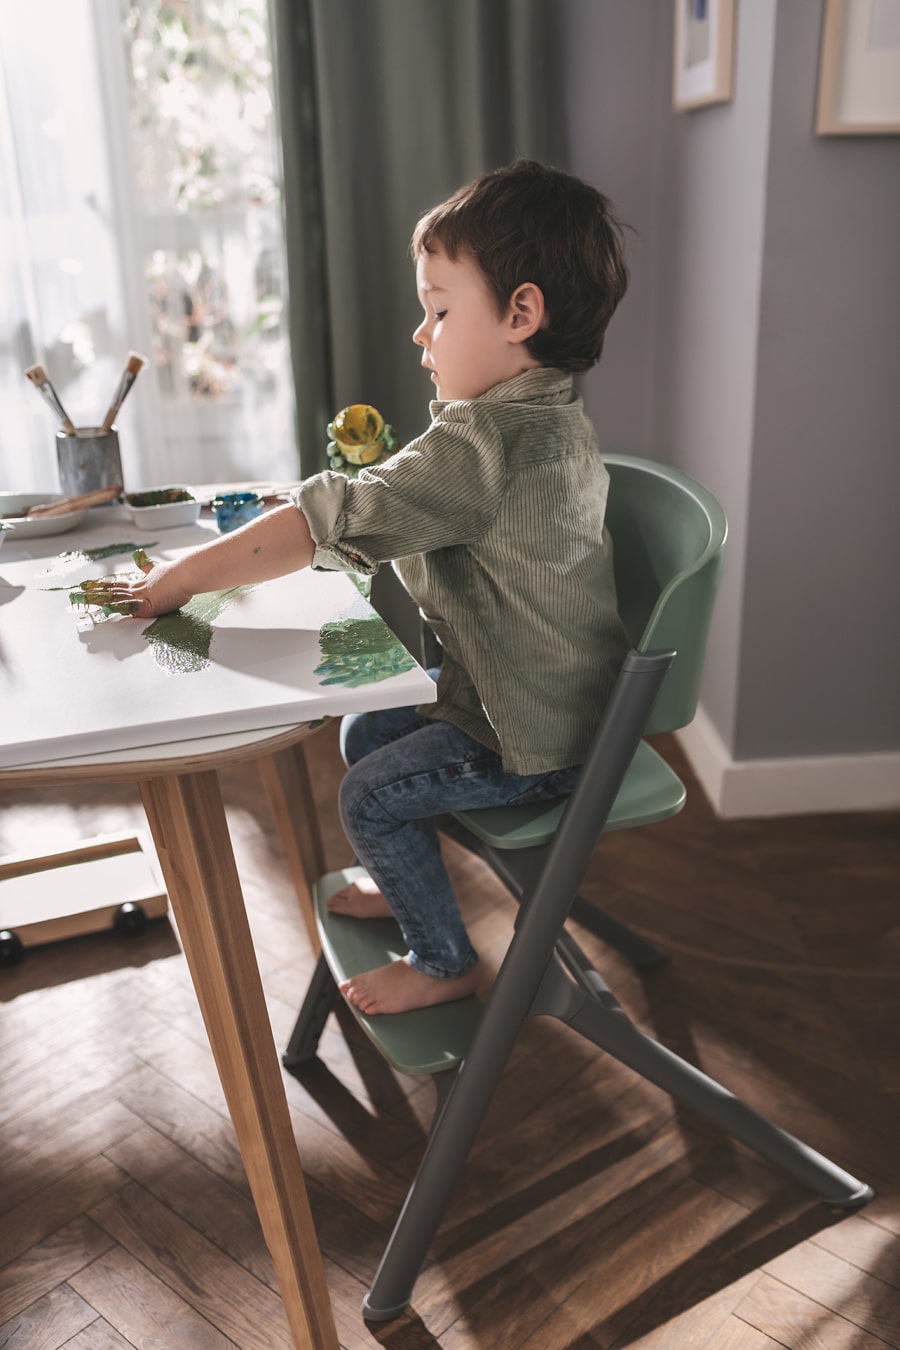 Le petit garçon est assis dans la chaise haute LIVY de Kinderkraft, peignant avec ses doigts sur la toile, il est concentré et détendu